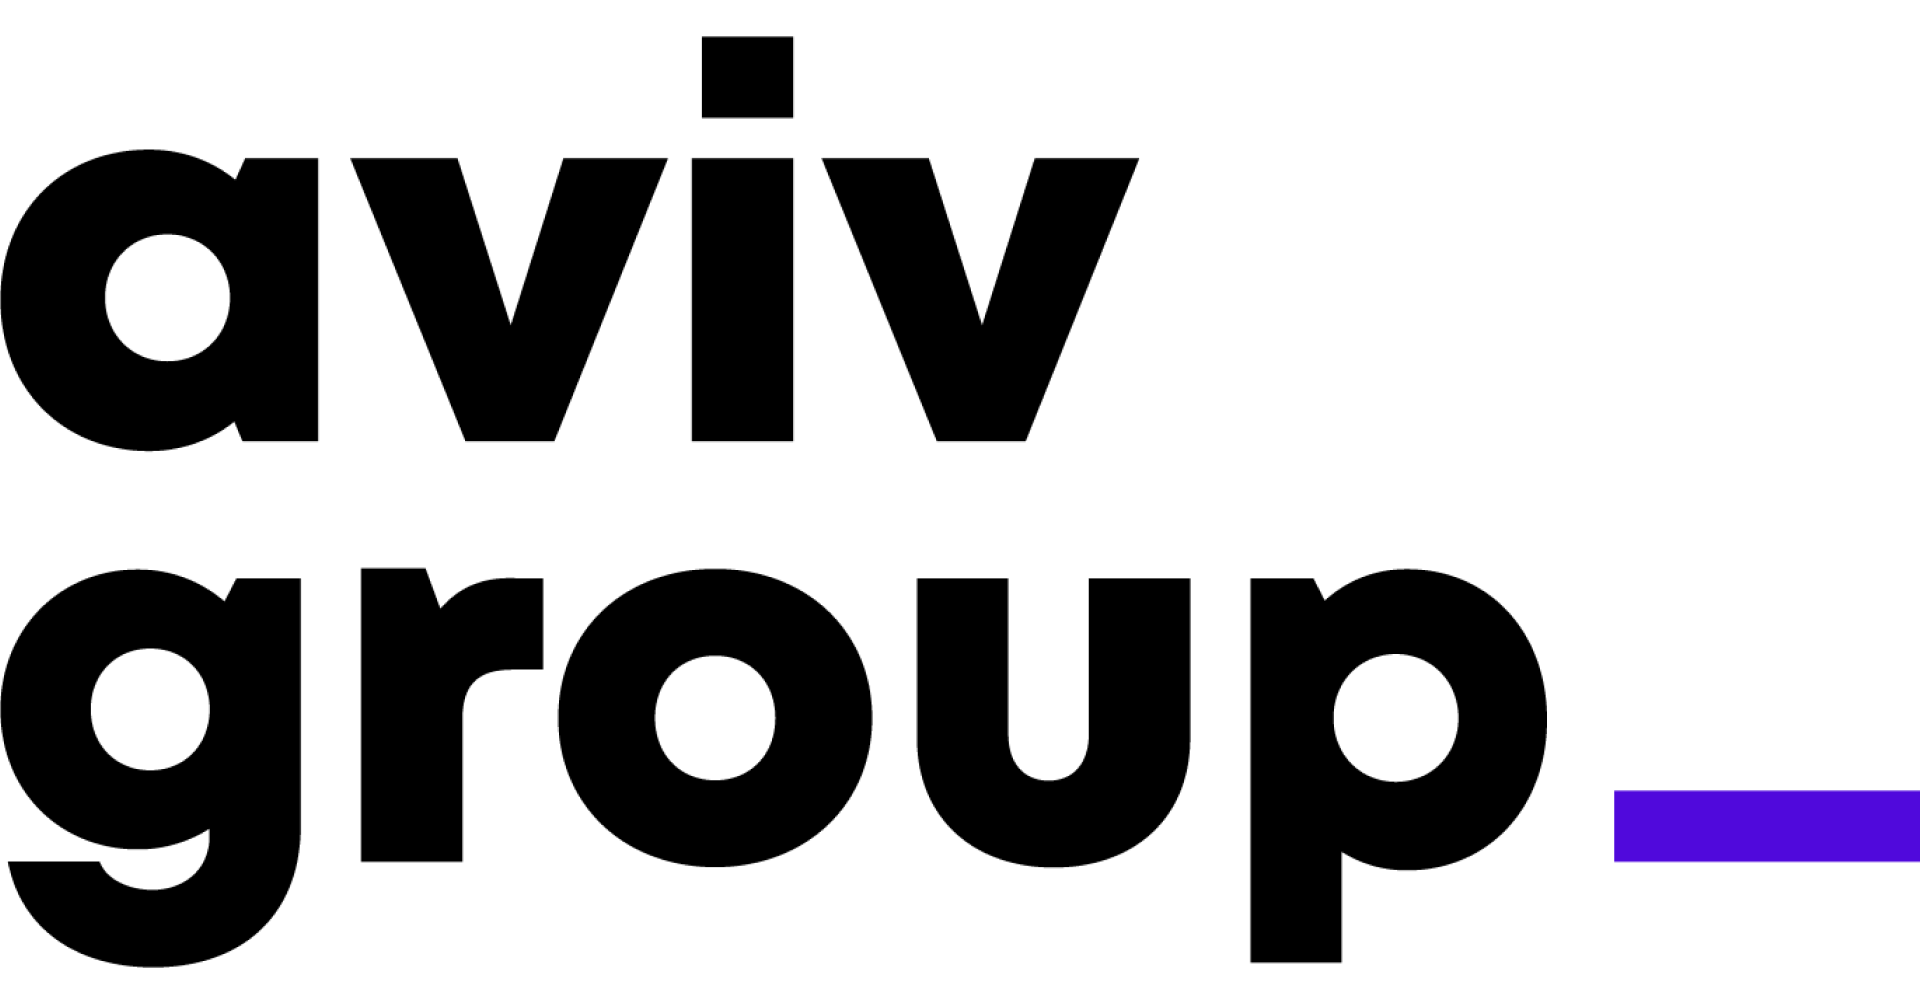 AVIV Group